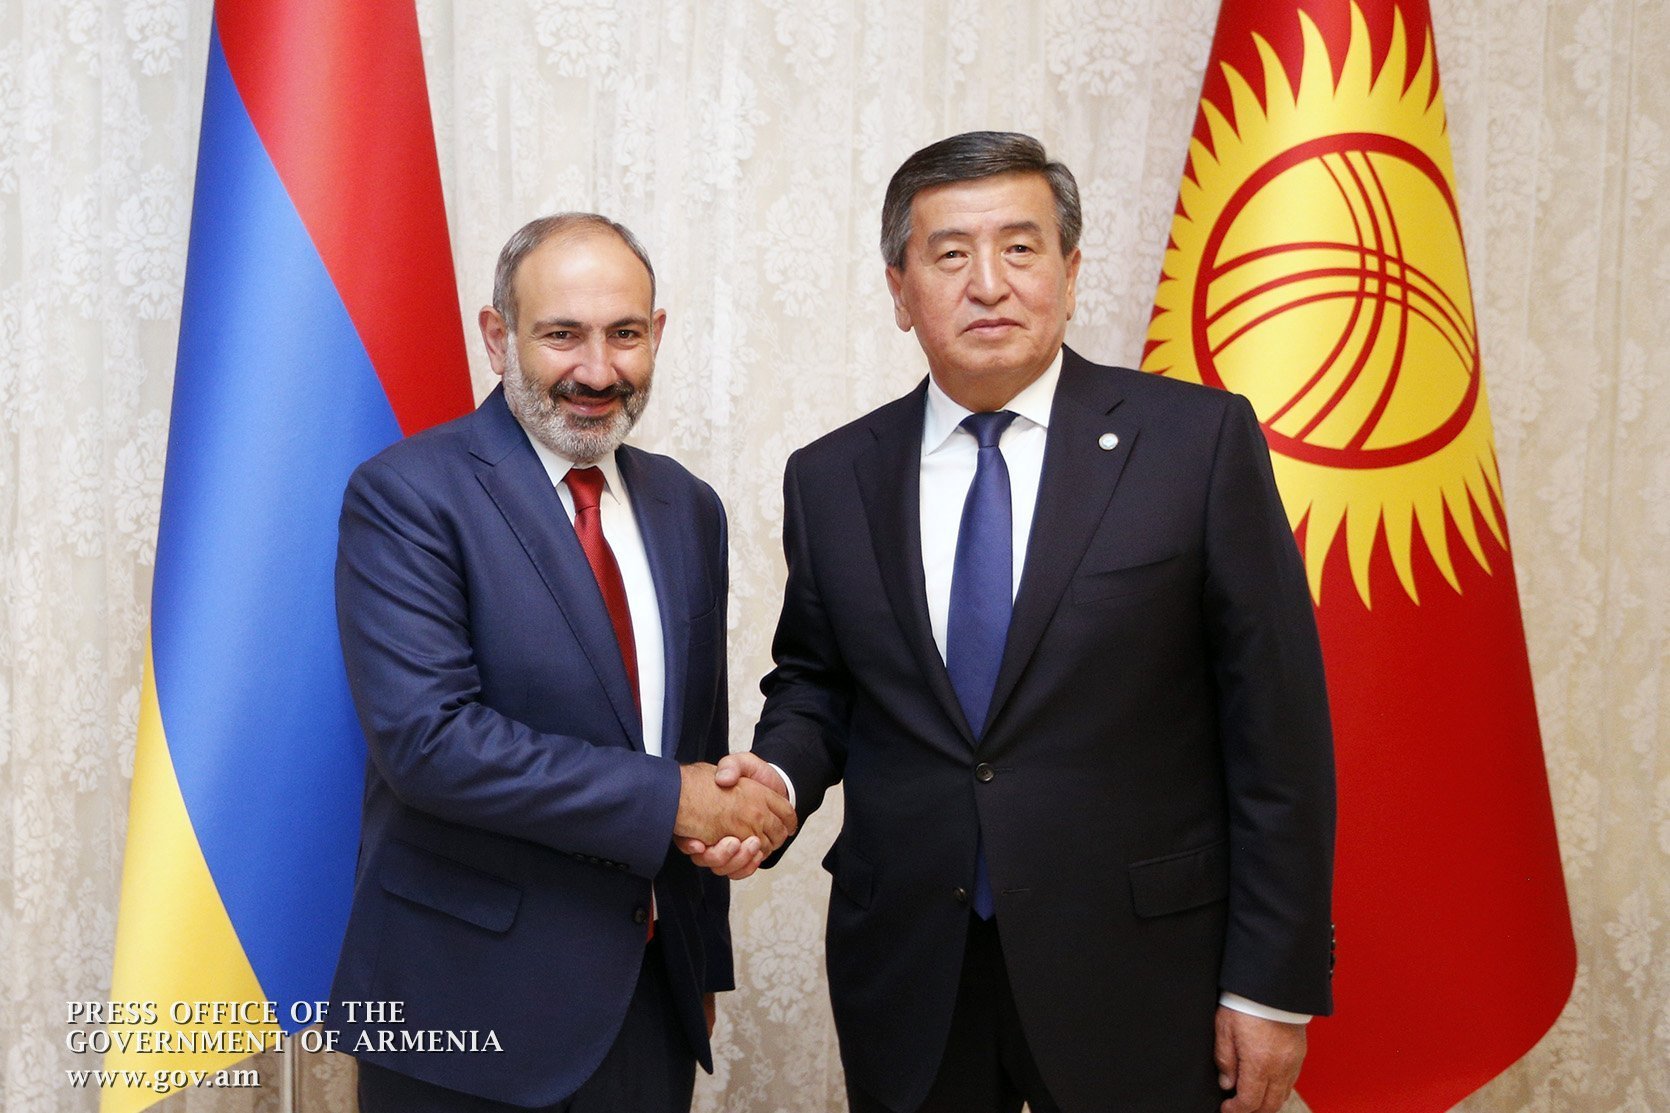 Հայաստանի և Ղրղզստանի միջև կրկնակի հարկումը բացառող համաձայնագիրը հավանության արժանացավ